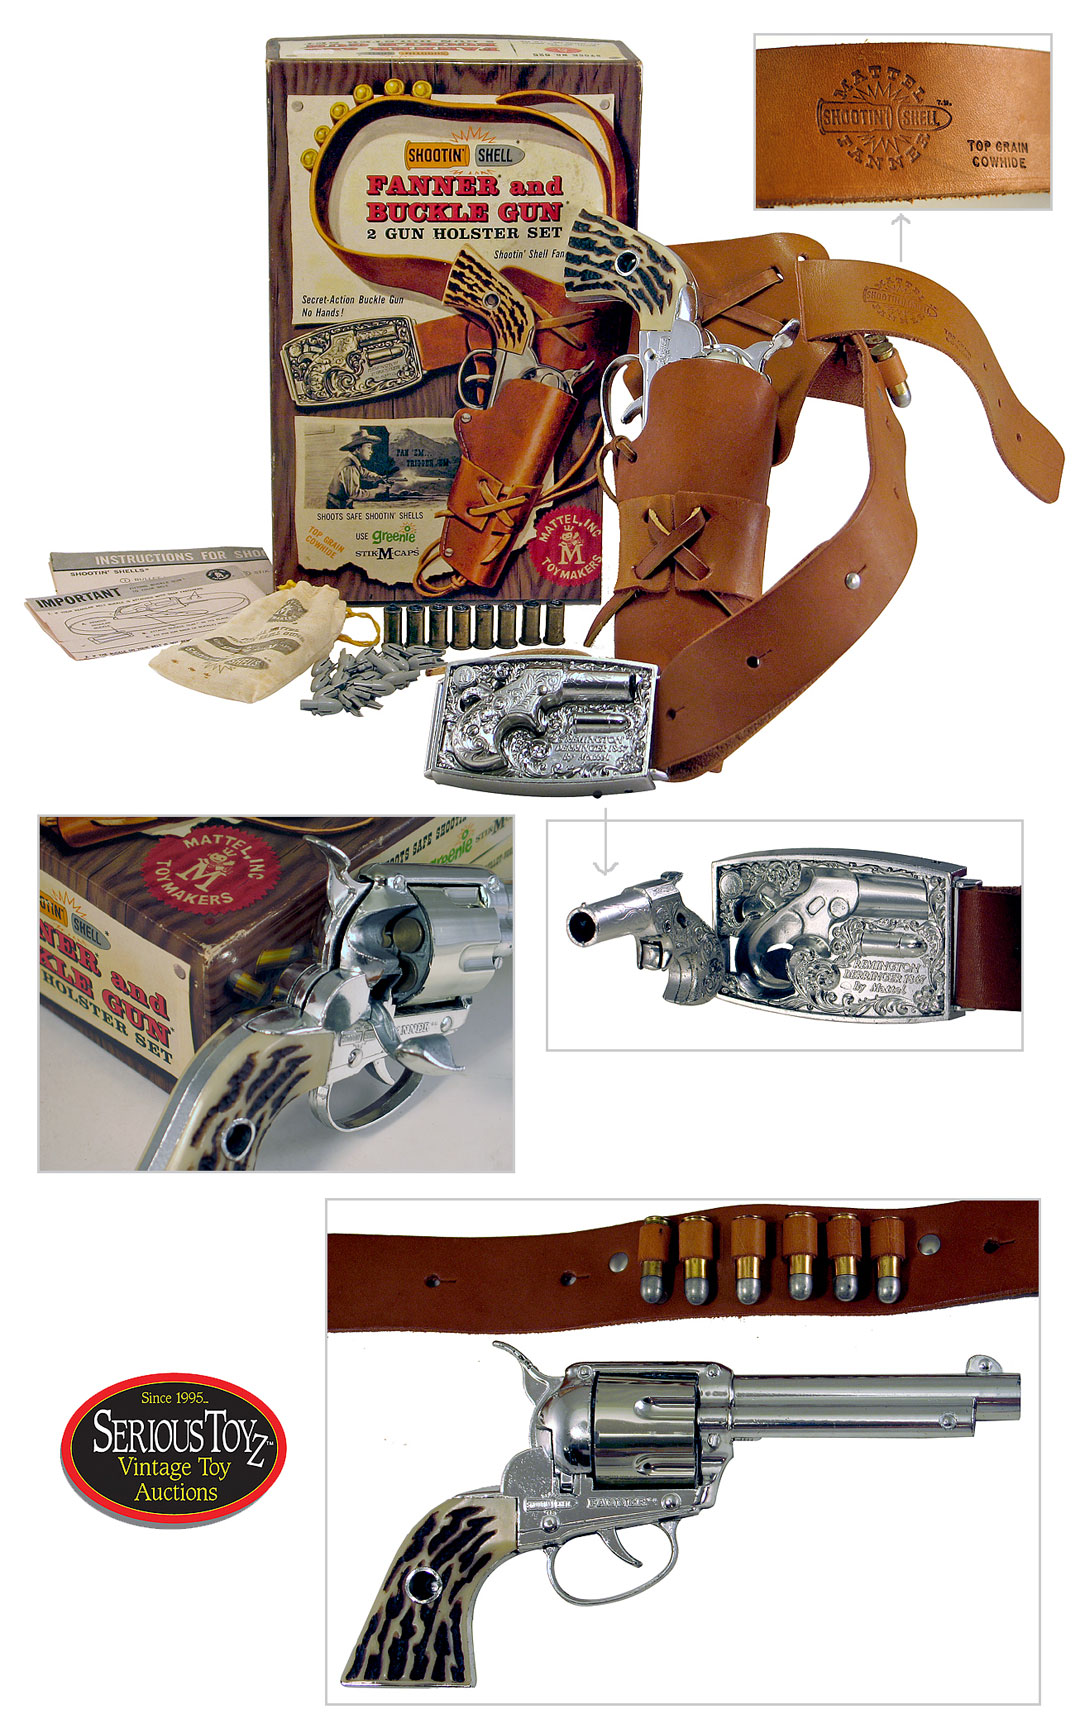 Shootin’ Shell Fanner and Buckle Gun 2 Gun Holster Set”, 1958, Mattel